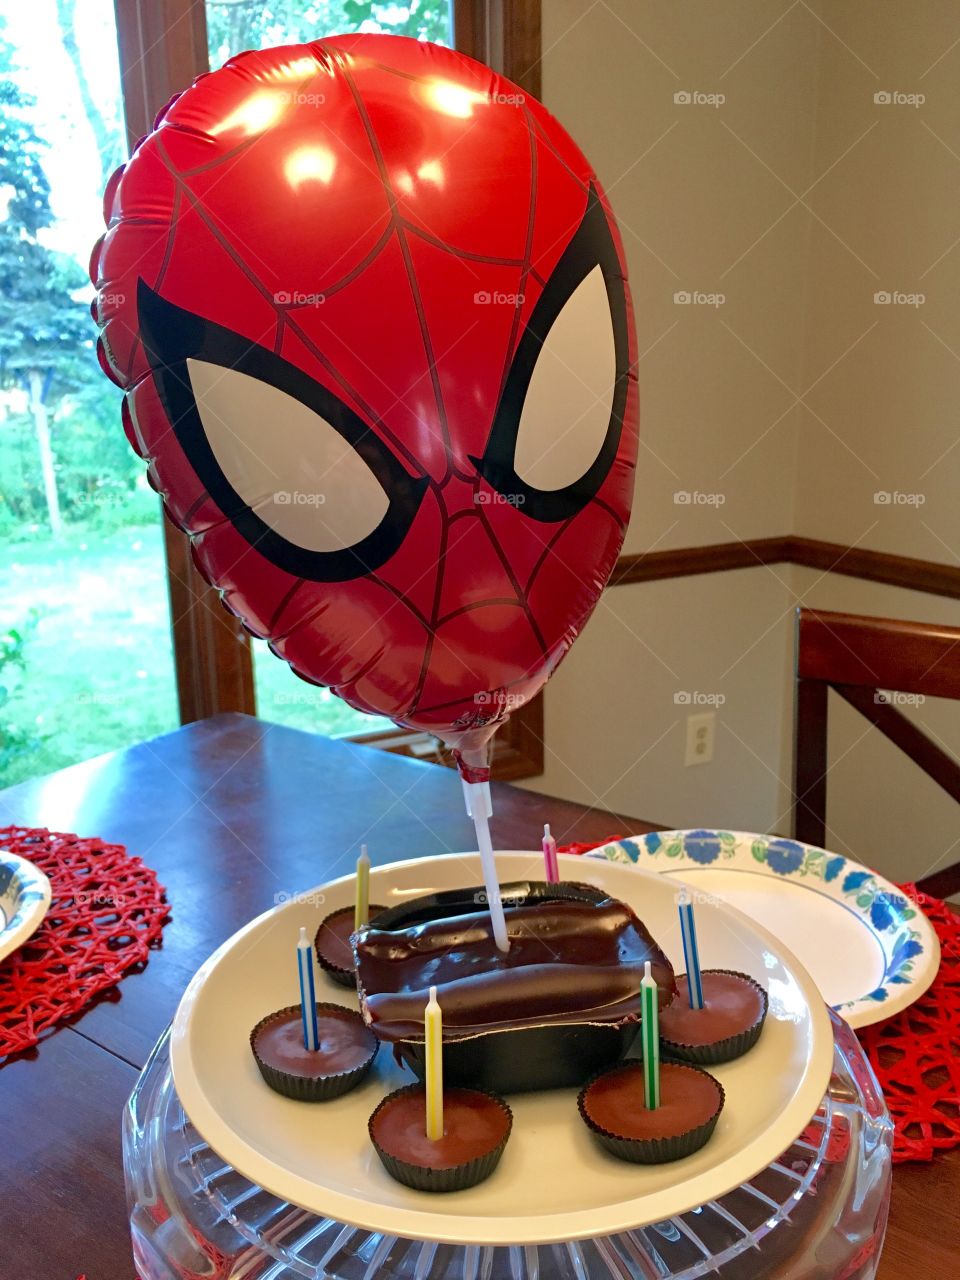 Spider-Man birthday